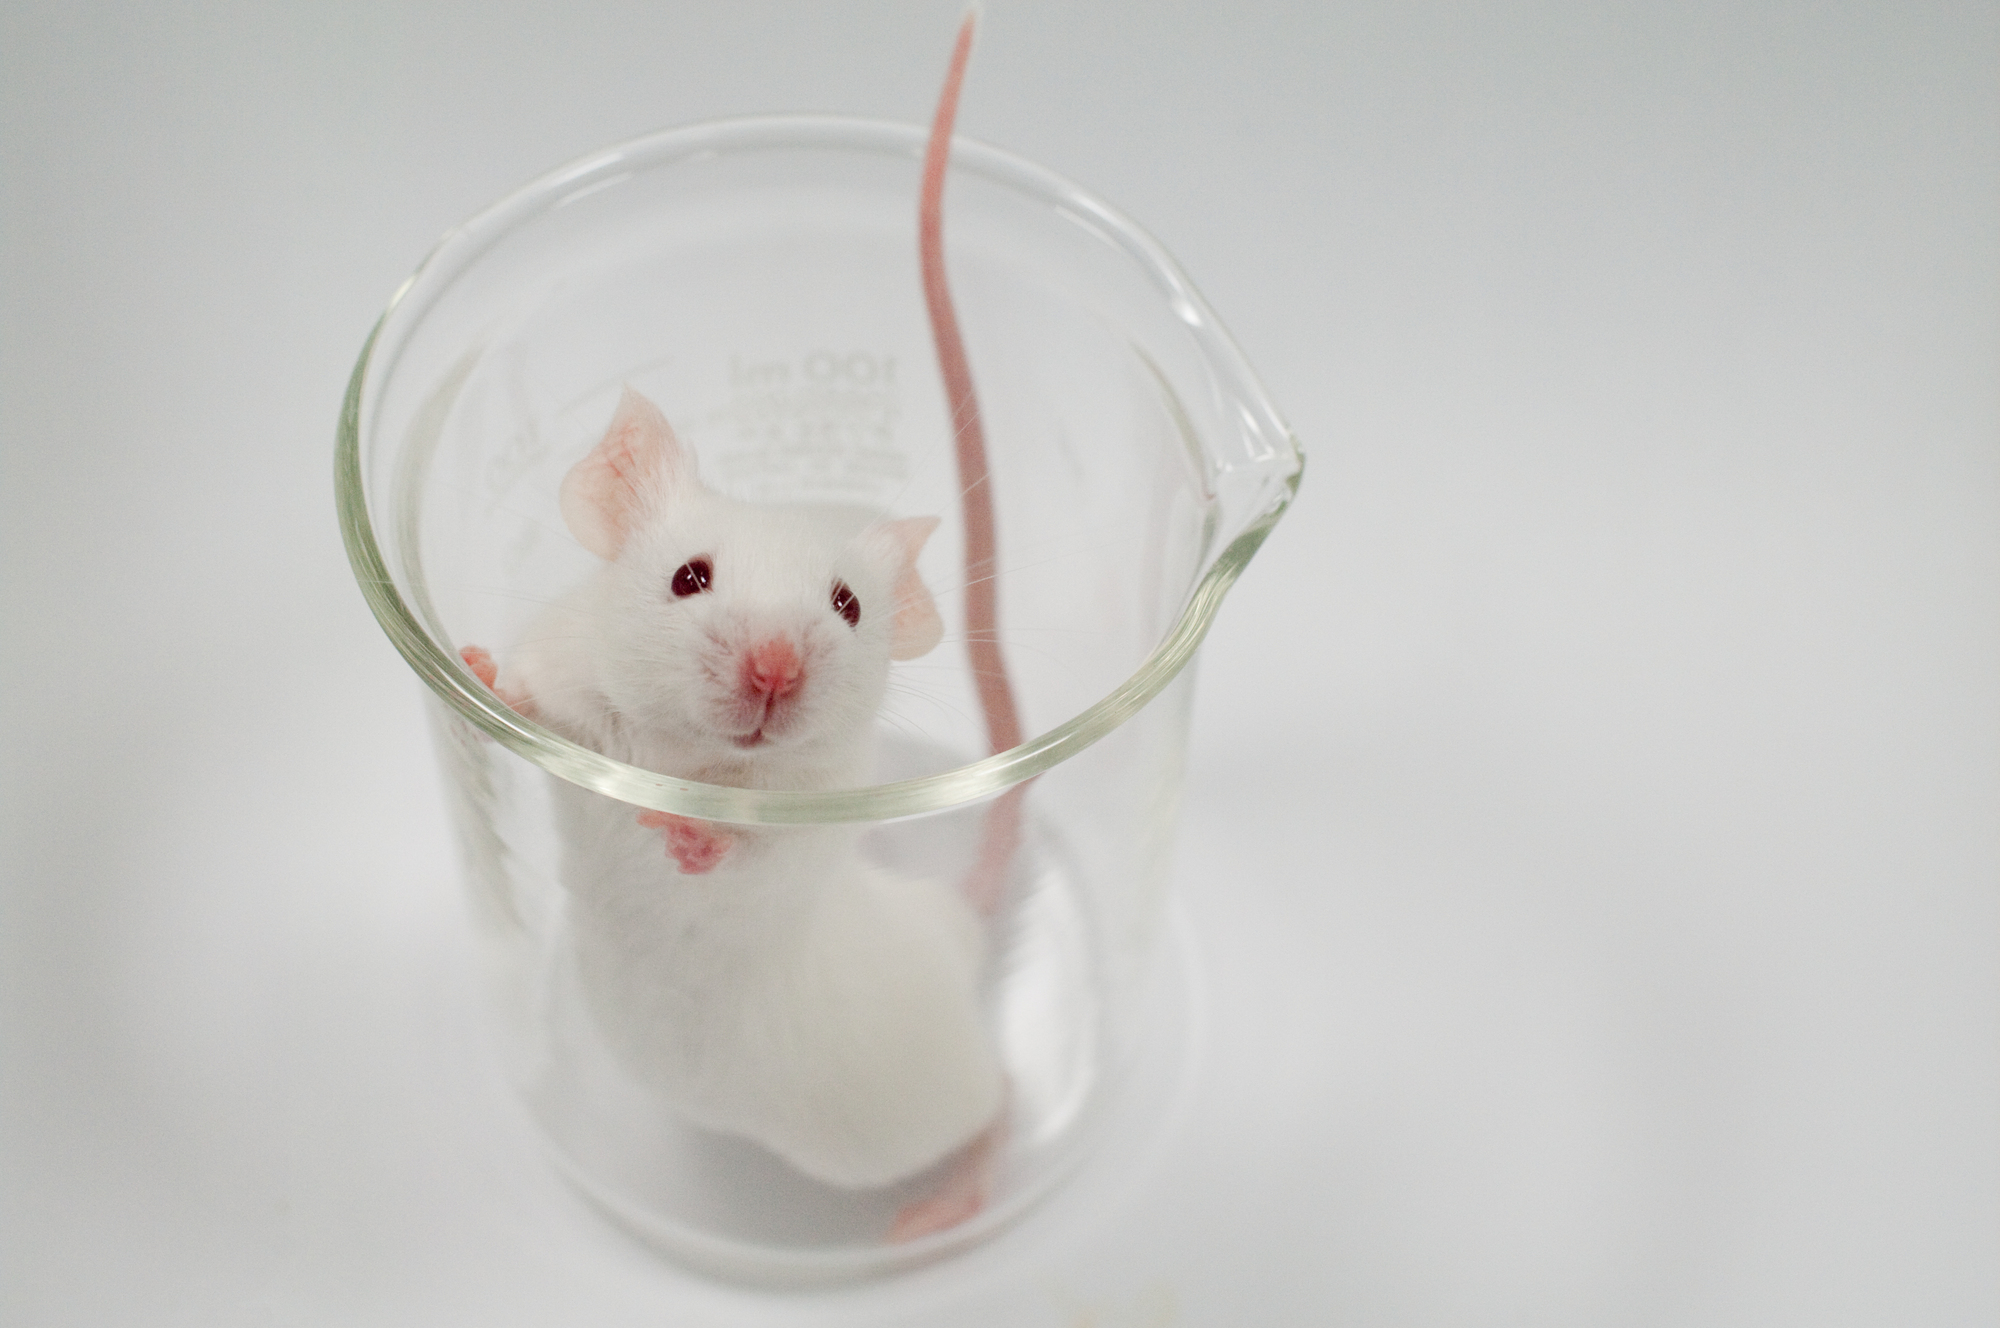 ビーカーに入った実験用マウス